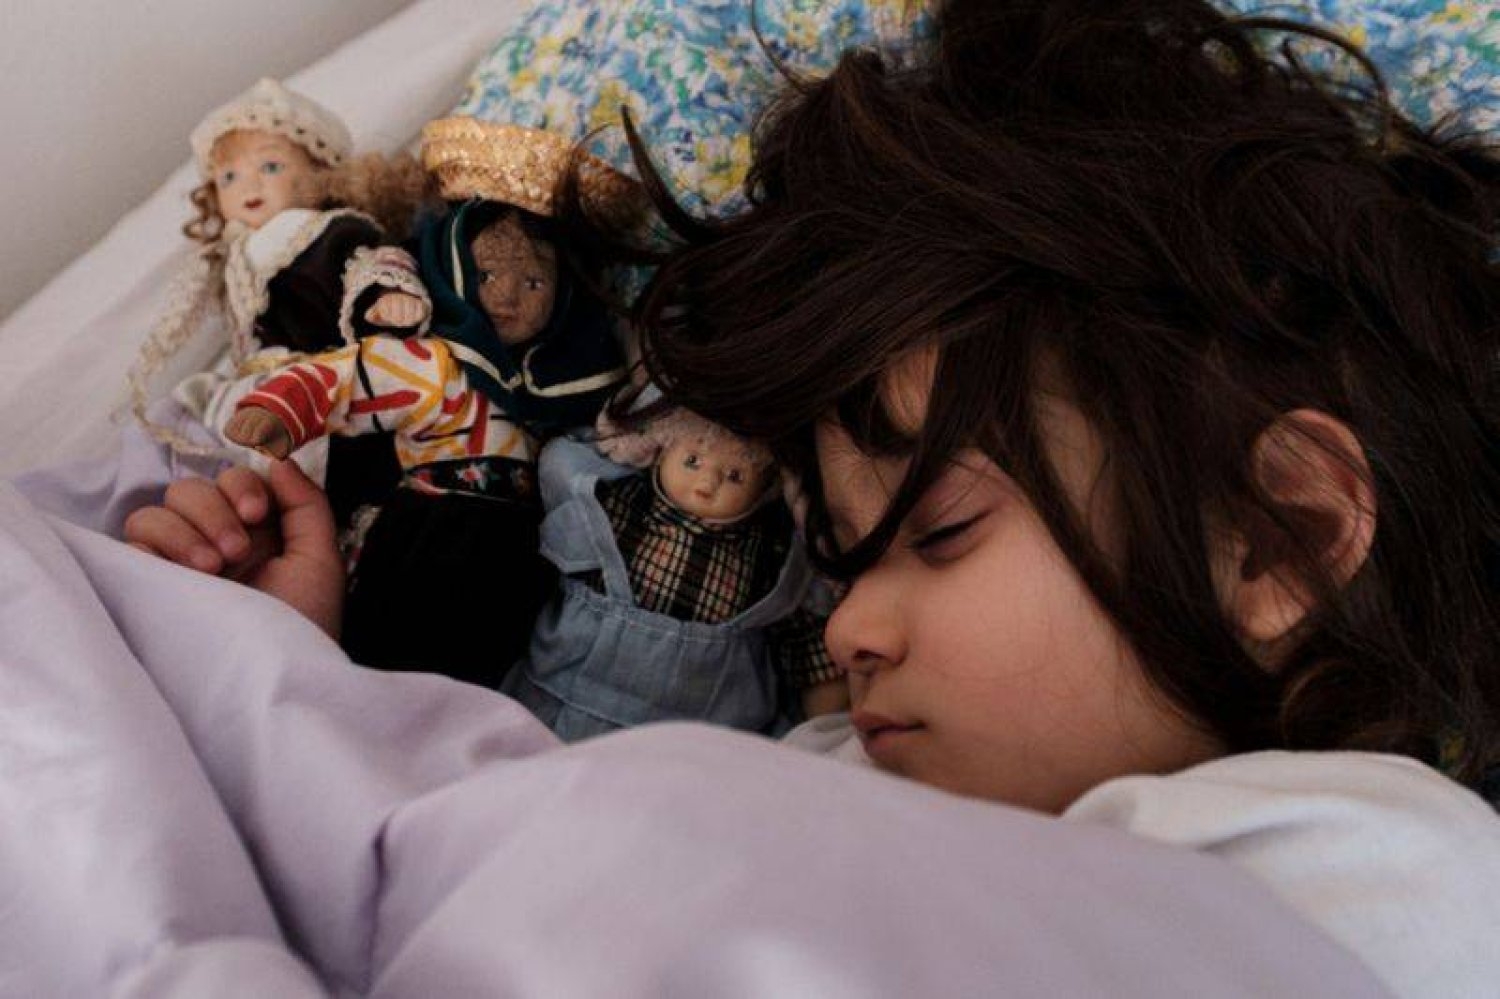 التأخر في النوم وقلة عدد ساعاته يهددان الأطفال بمرض الضغط